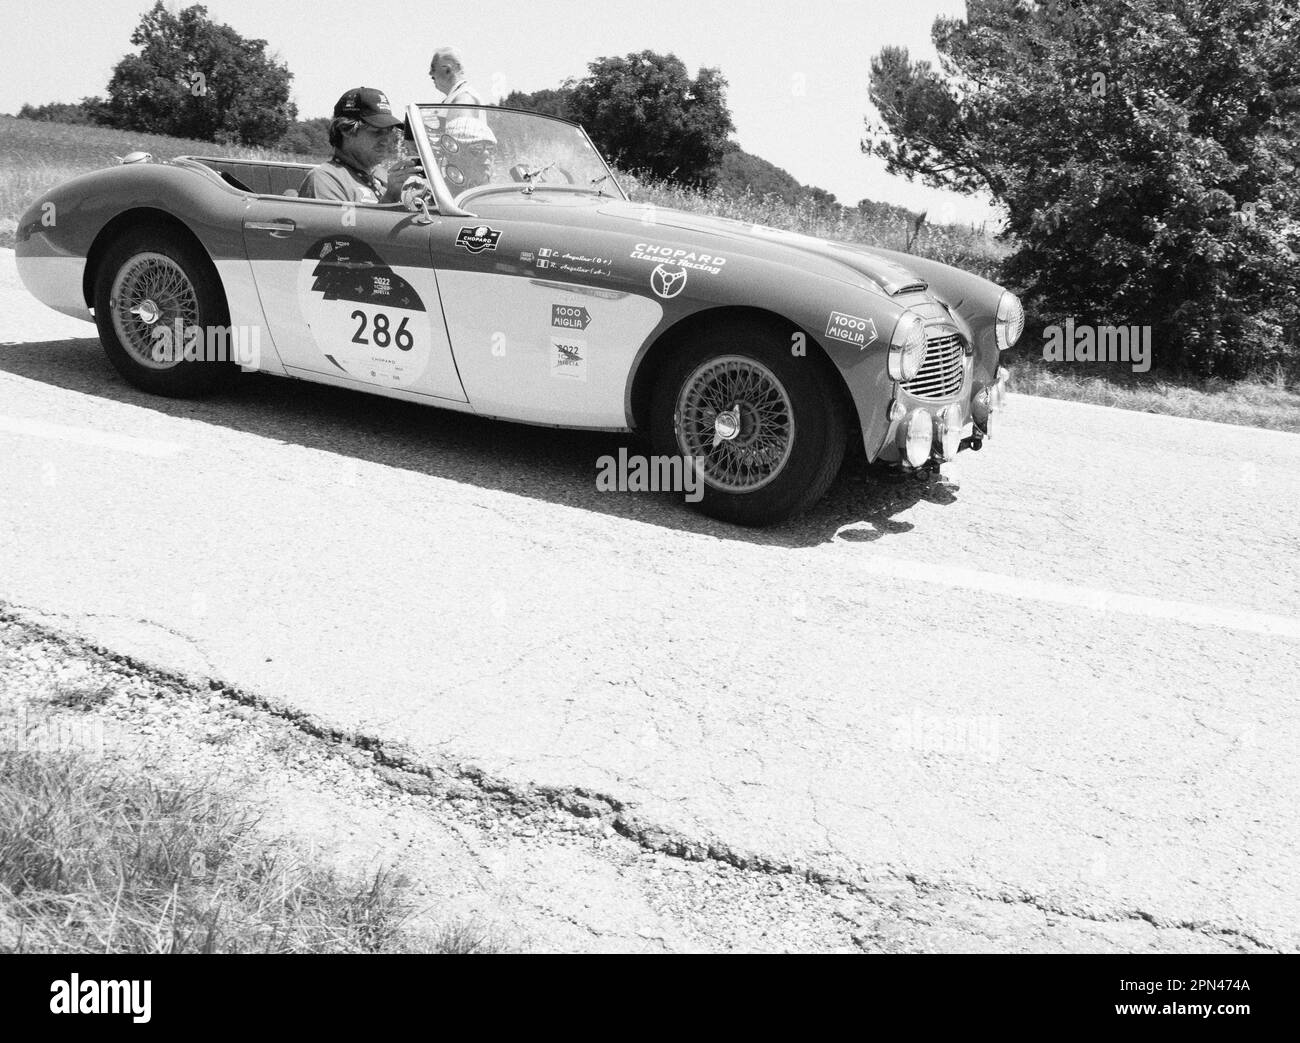 URBINO, ITALIE - 16 - 2022 JUIN : AUSTIN HEALEY 100 6 1957 sur une vieille voiture de course en rallye mille Miglia 2022 la célèbre course historique italienne Banque D'Images